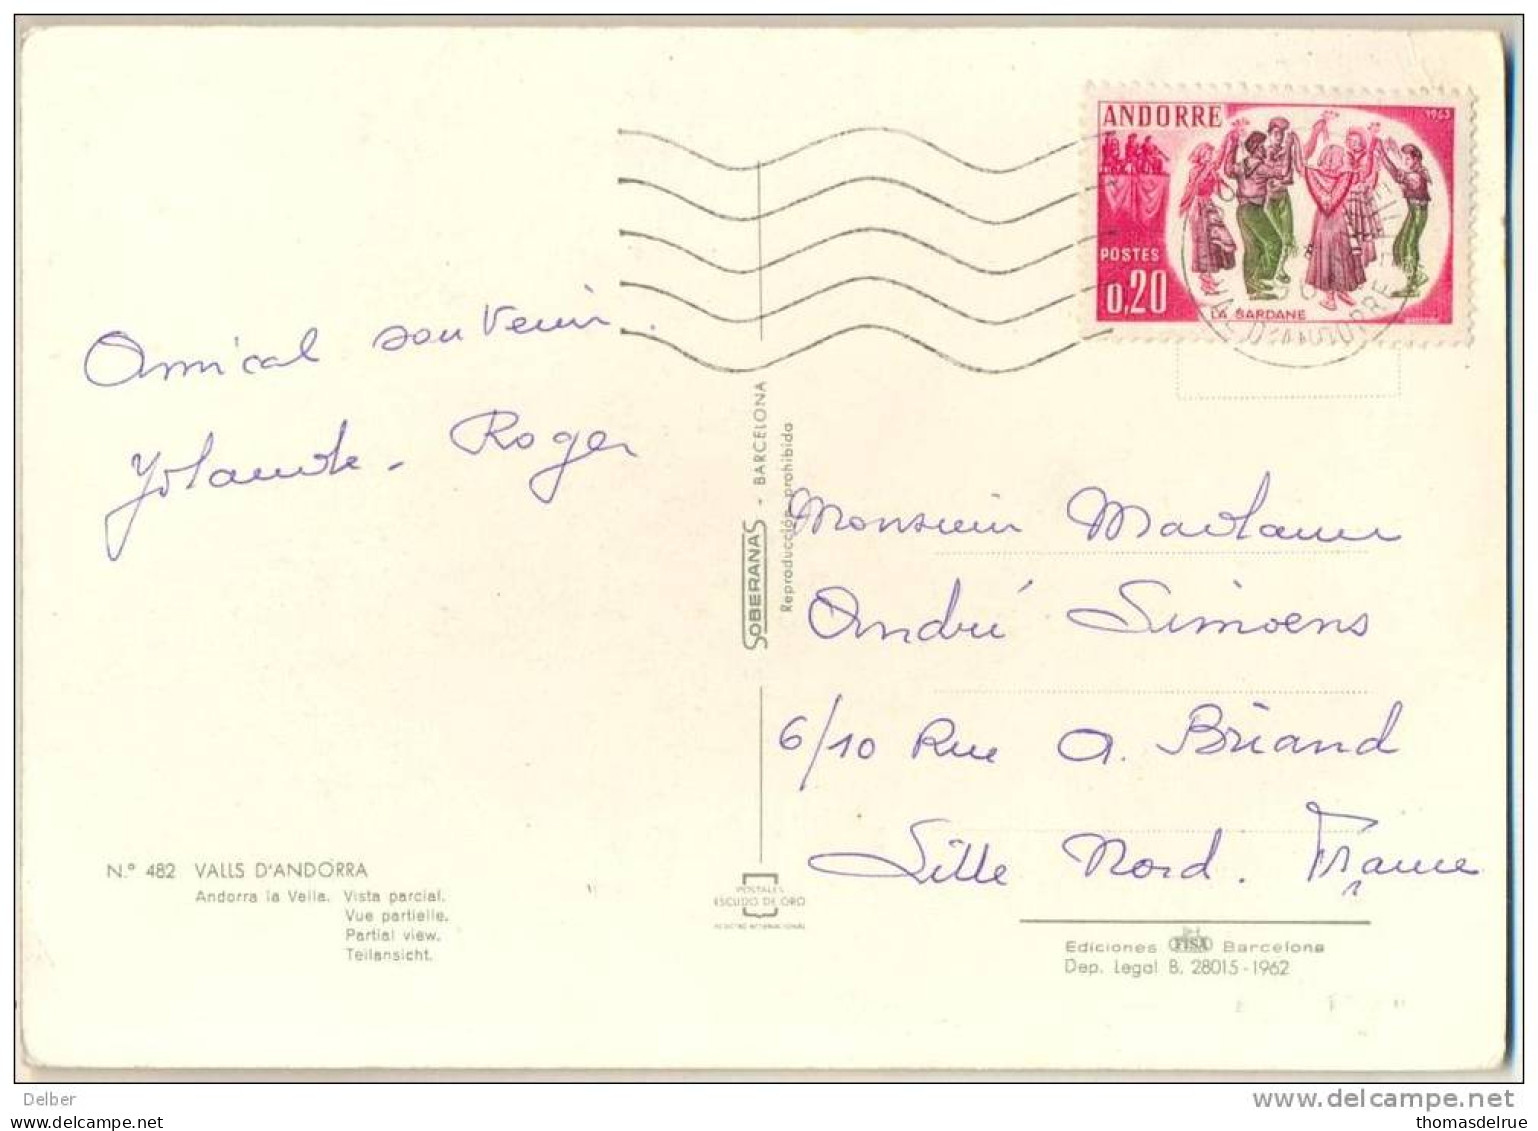 _2n723: N° 166 / Carte Postale: N° 480 VALLS D'ANDORRA ...Vista Parcial... - Storia Postale